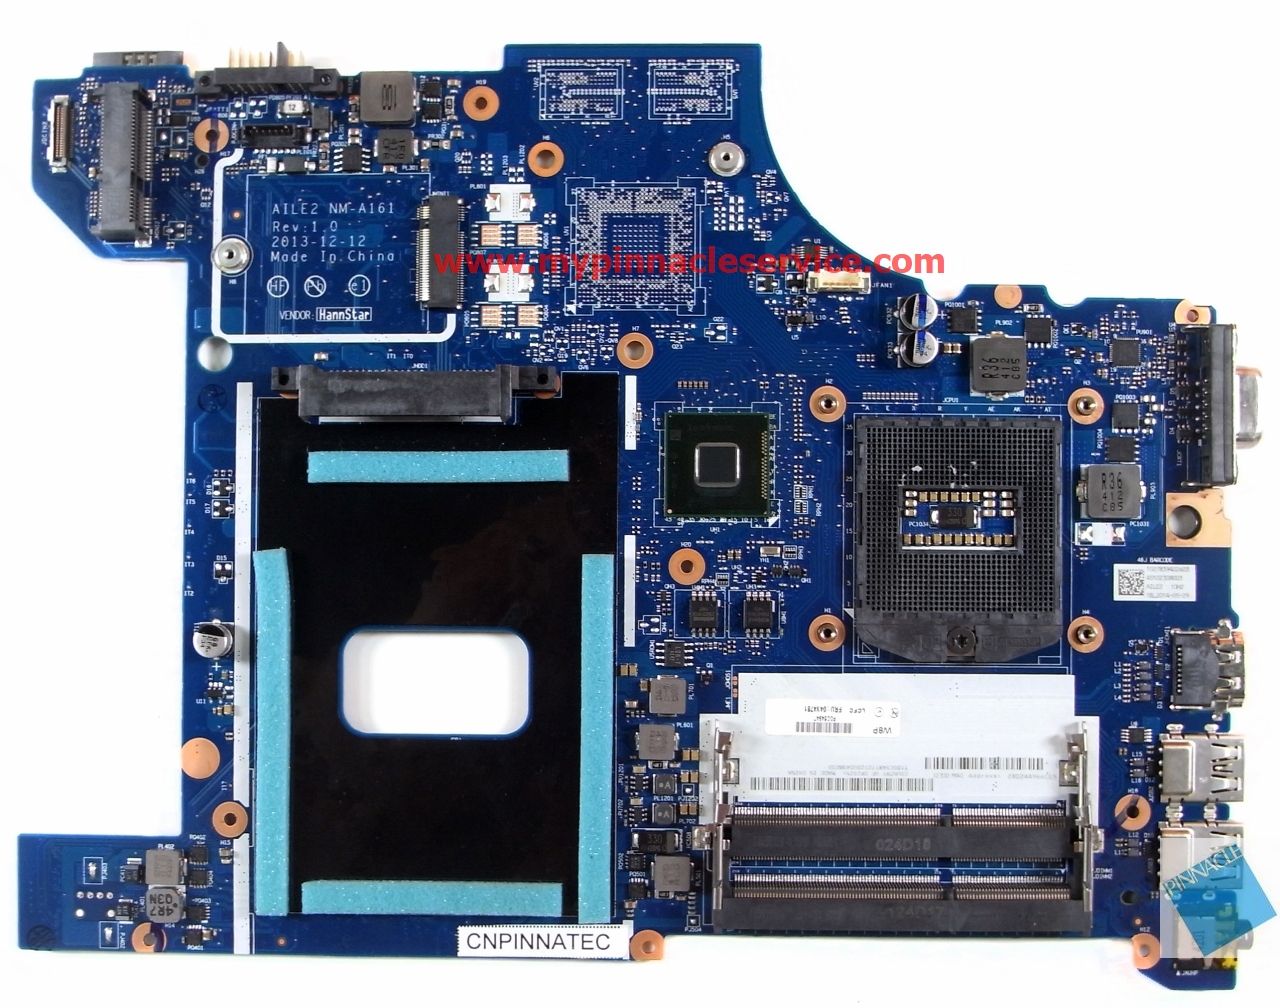 Lenovo ThinkPad E540 Motherboard AILE2 NM-A161 04X4781